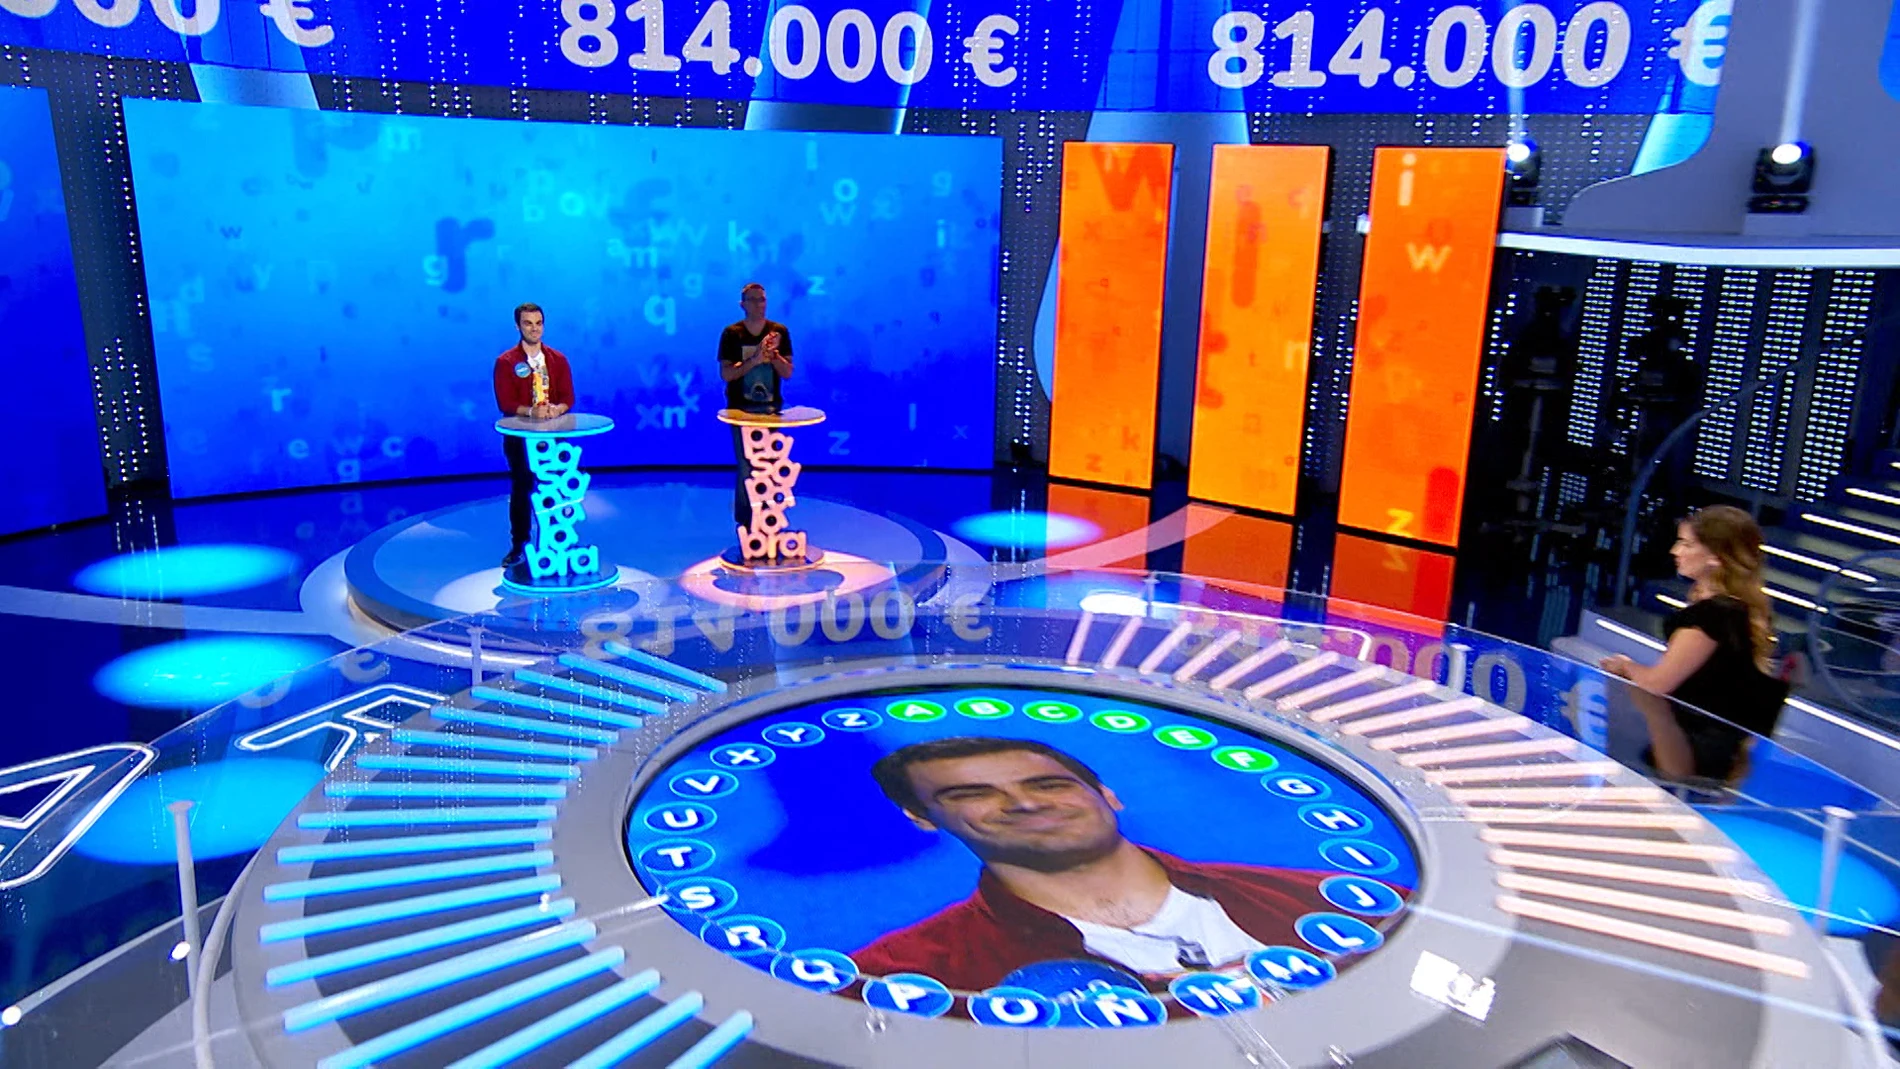 Los cuatro errores de Luis en ‘El Rosco’ le devuelven a Pablo la tranquilidad en la lucha por el bote: ¿conseguirá los 814.000 euros?